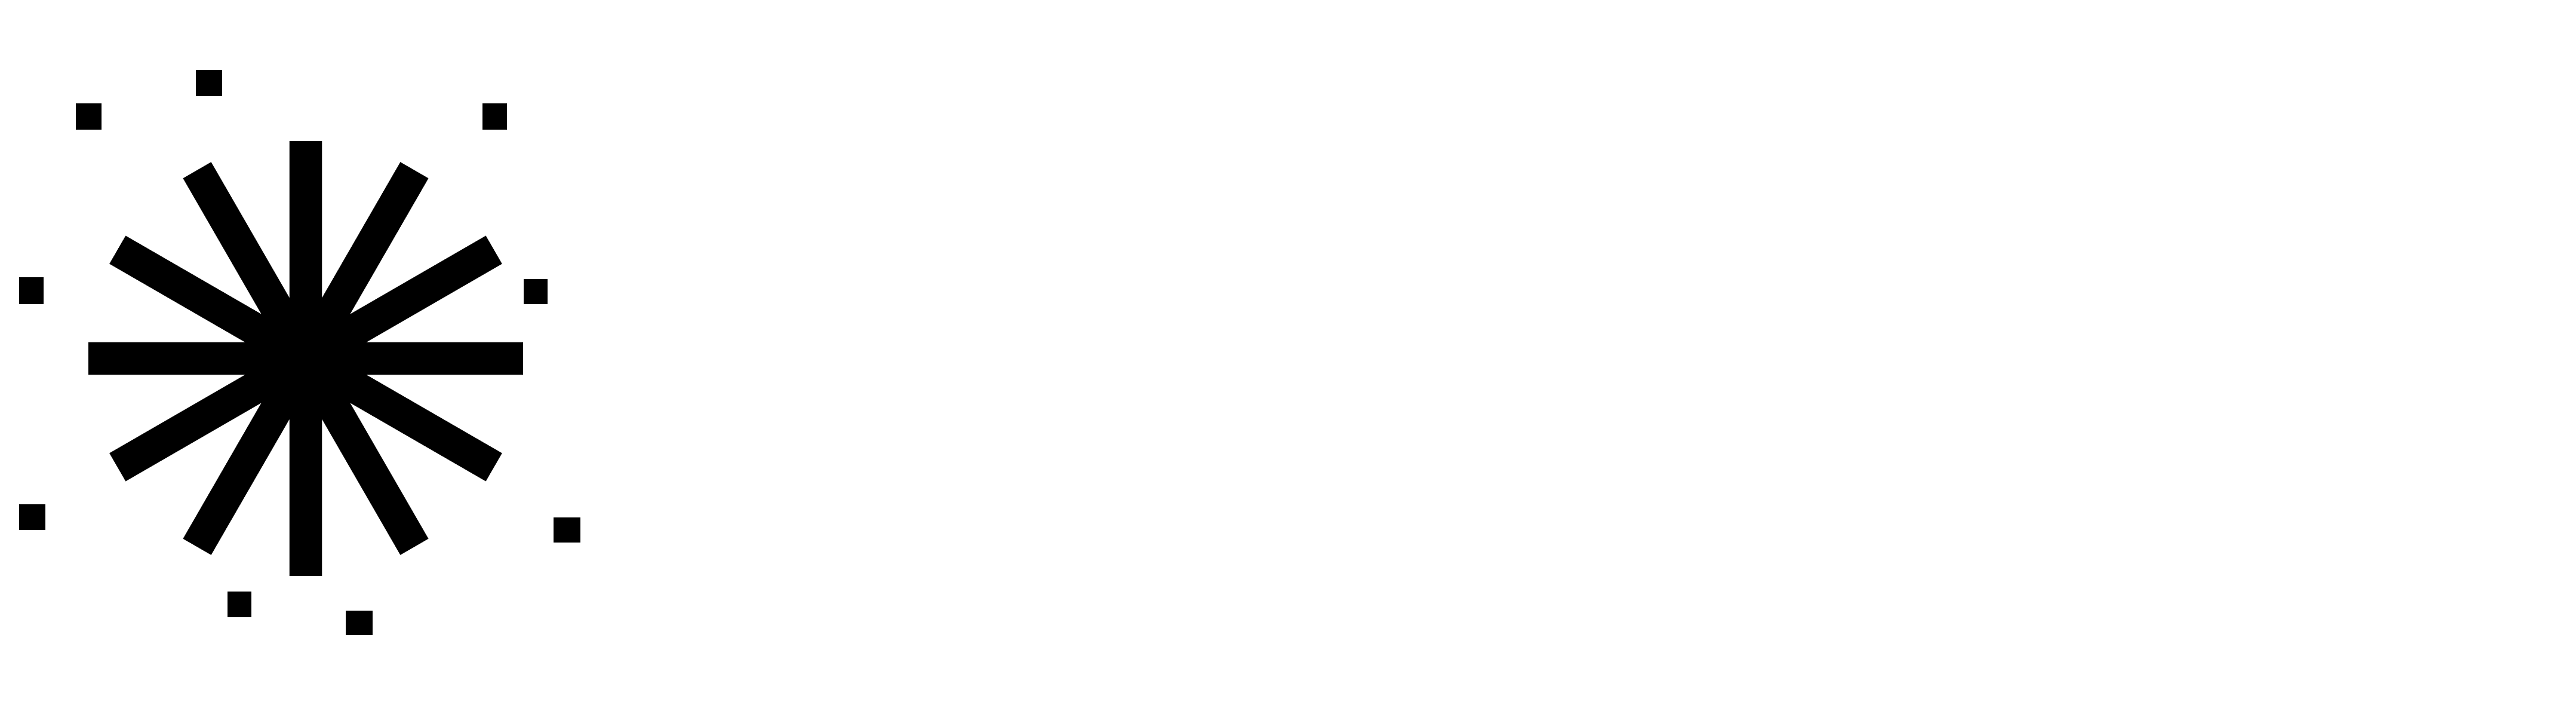 NeuralPix